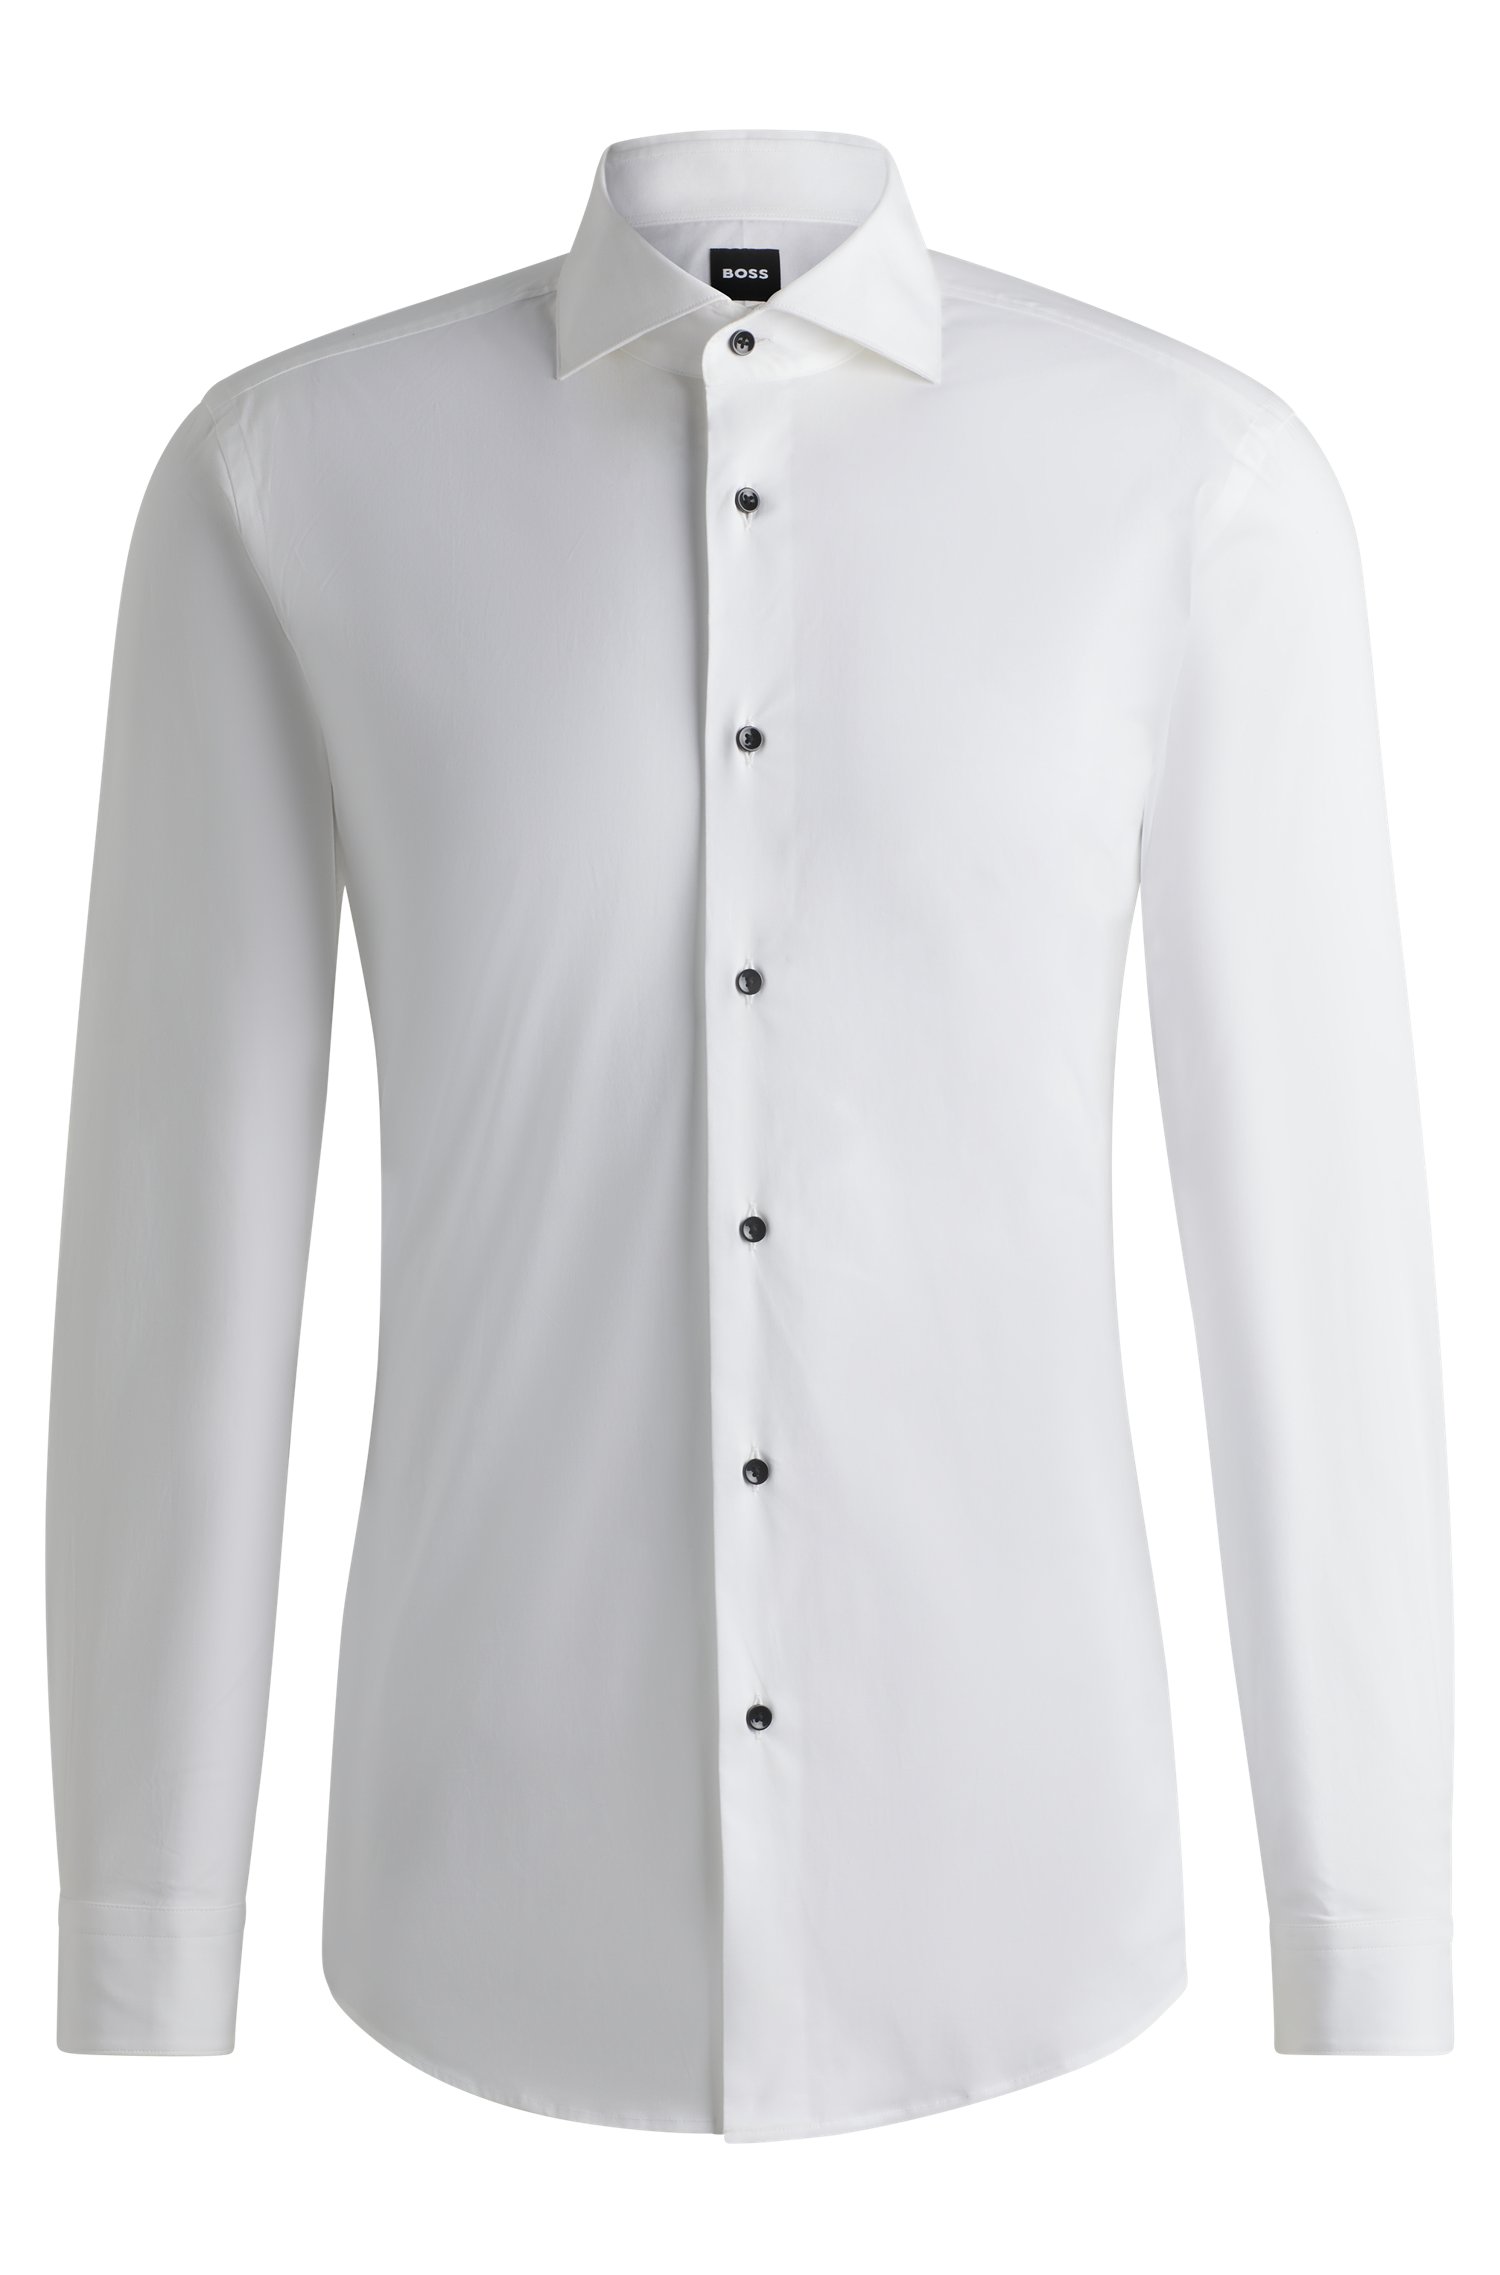 Camisa de vestir slim fit en algodón elástico planchado fácil